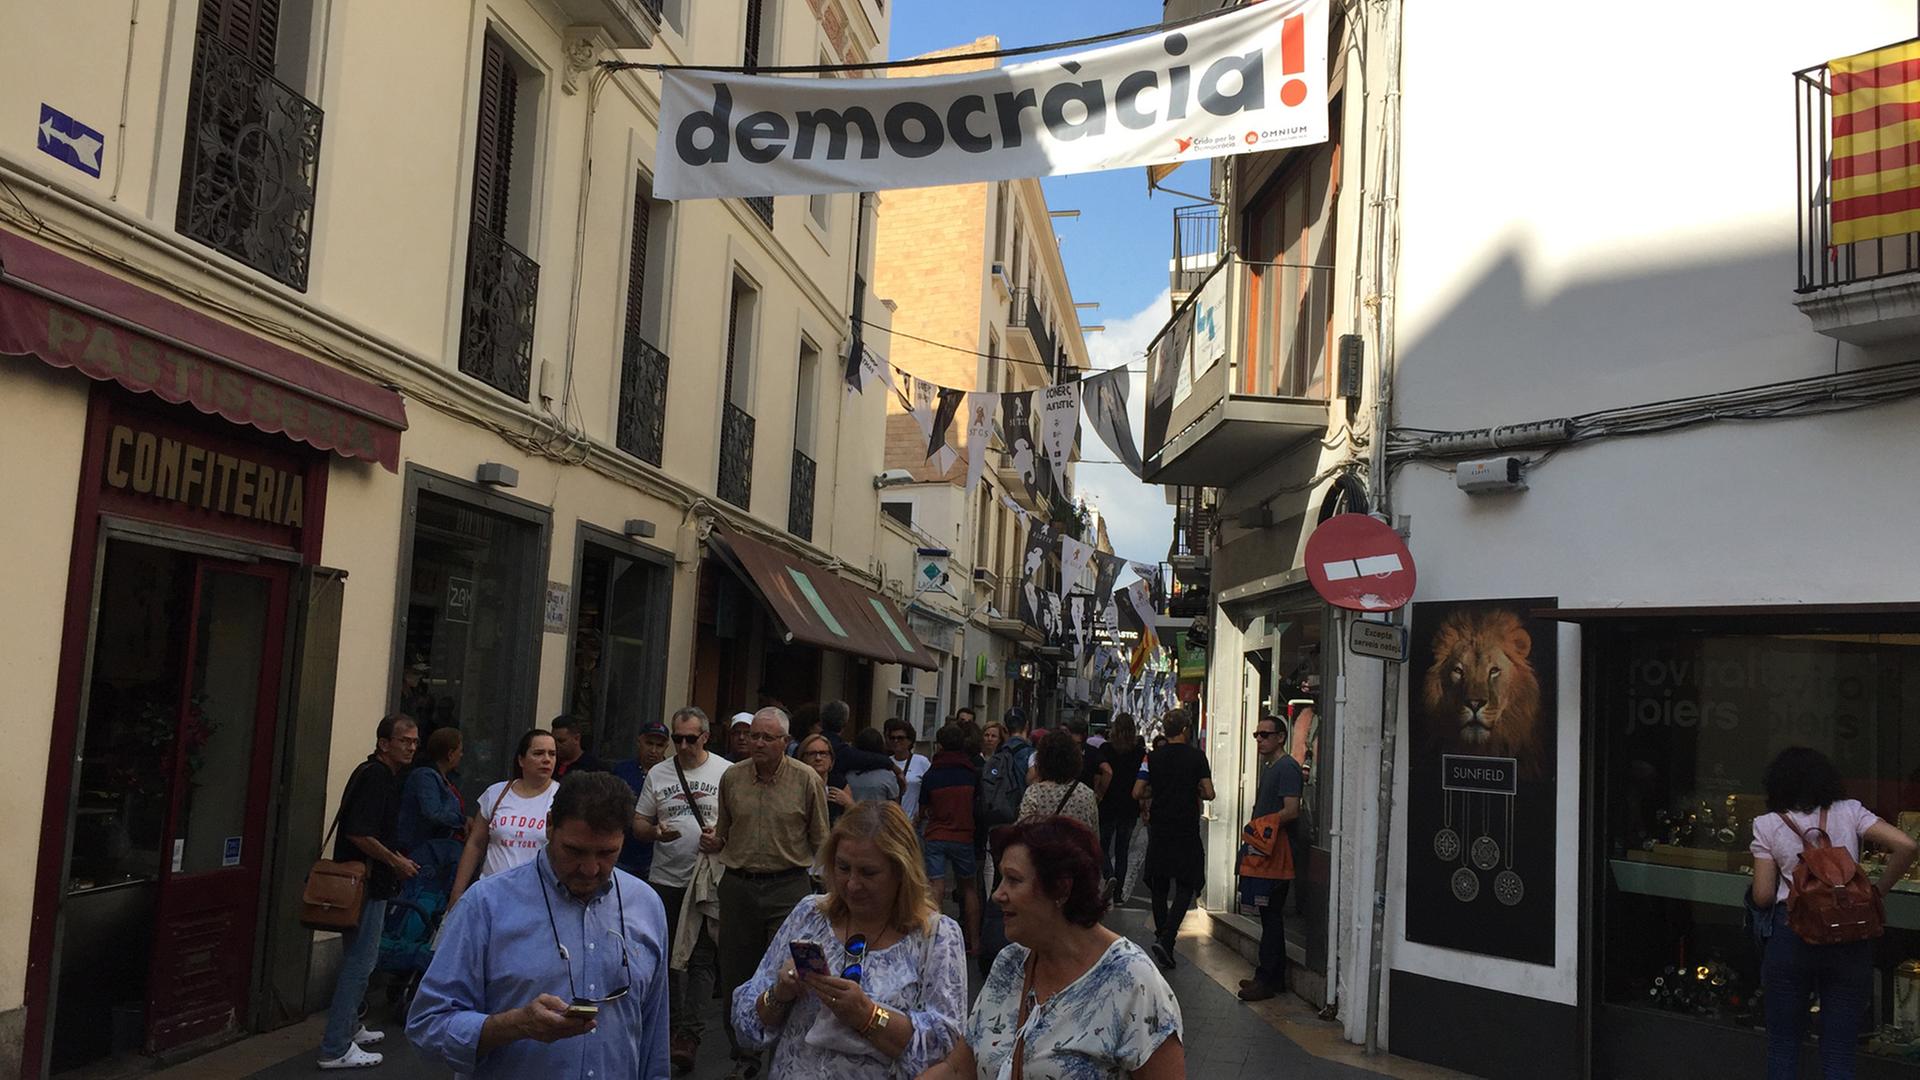 "Democracia" - Demokratie wird auf einem Plakat in der spanischen Küstenstadt Sitges gefordert; Sitges liegt in der Comarca Garraf etwa 35 Kilometer südwestlich von Barcelona.